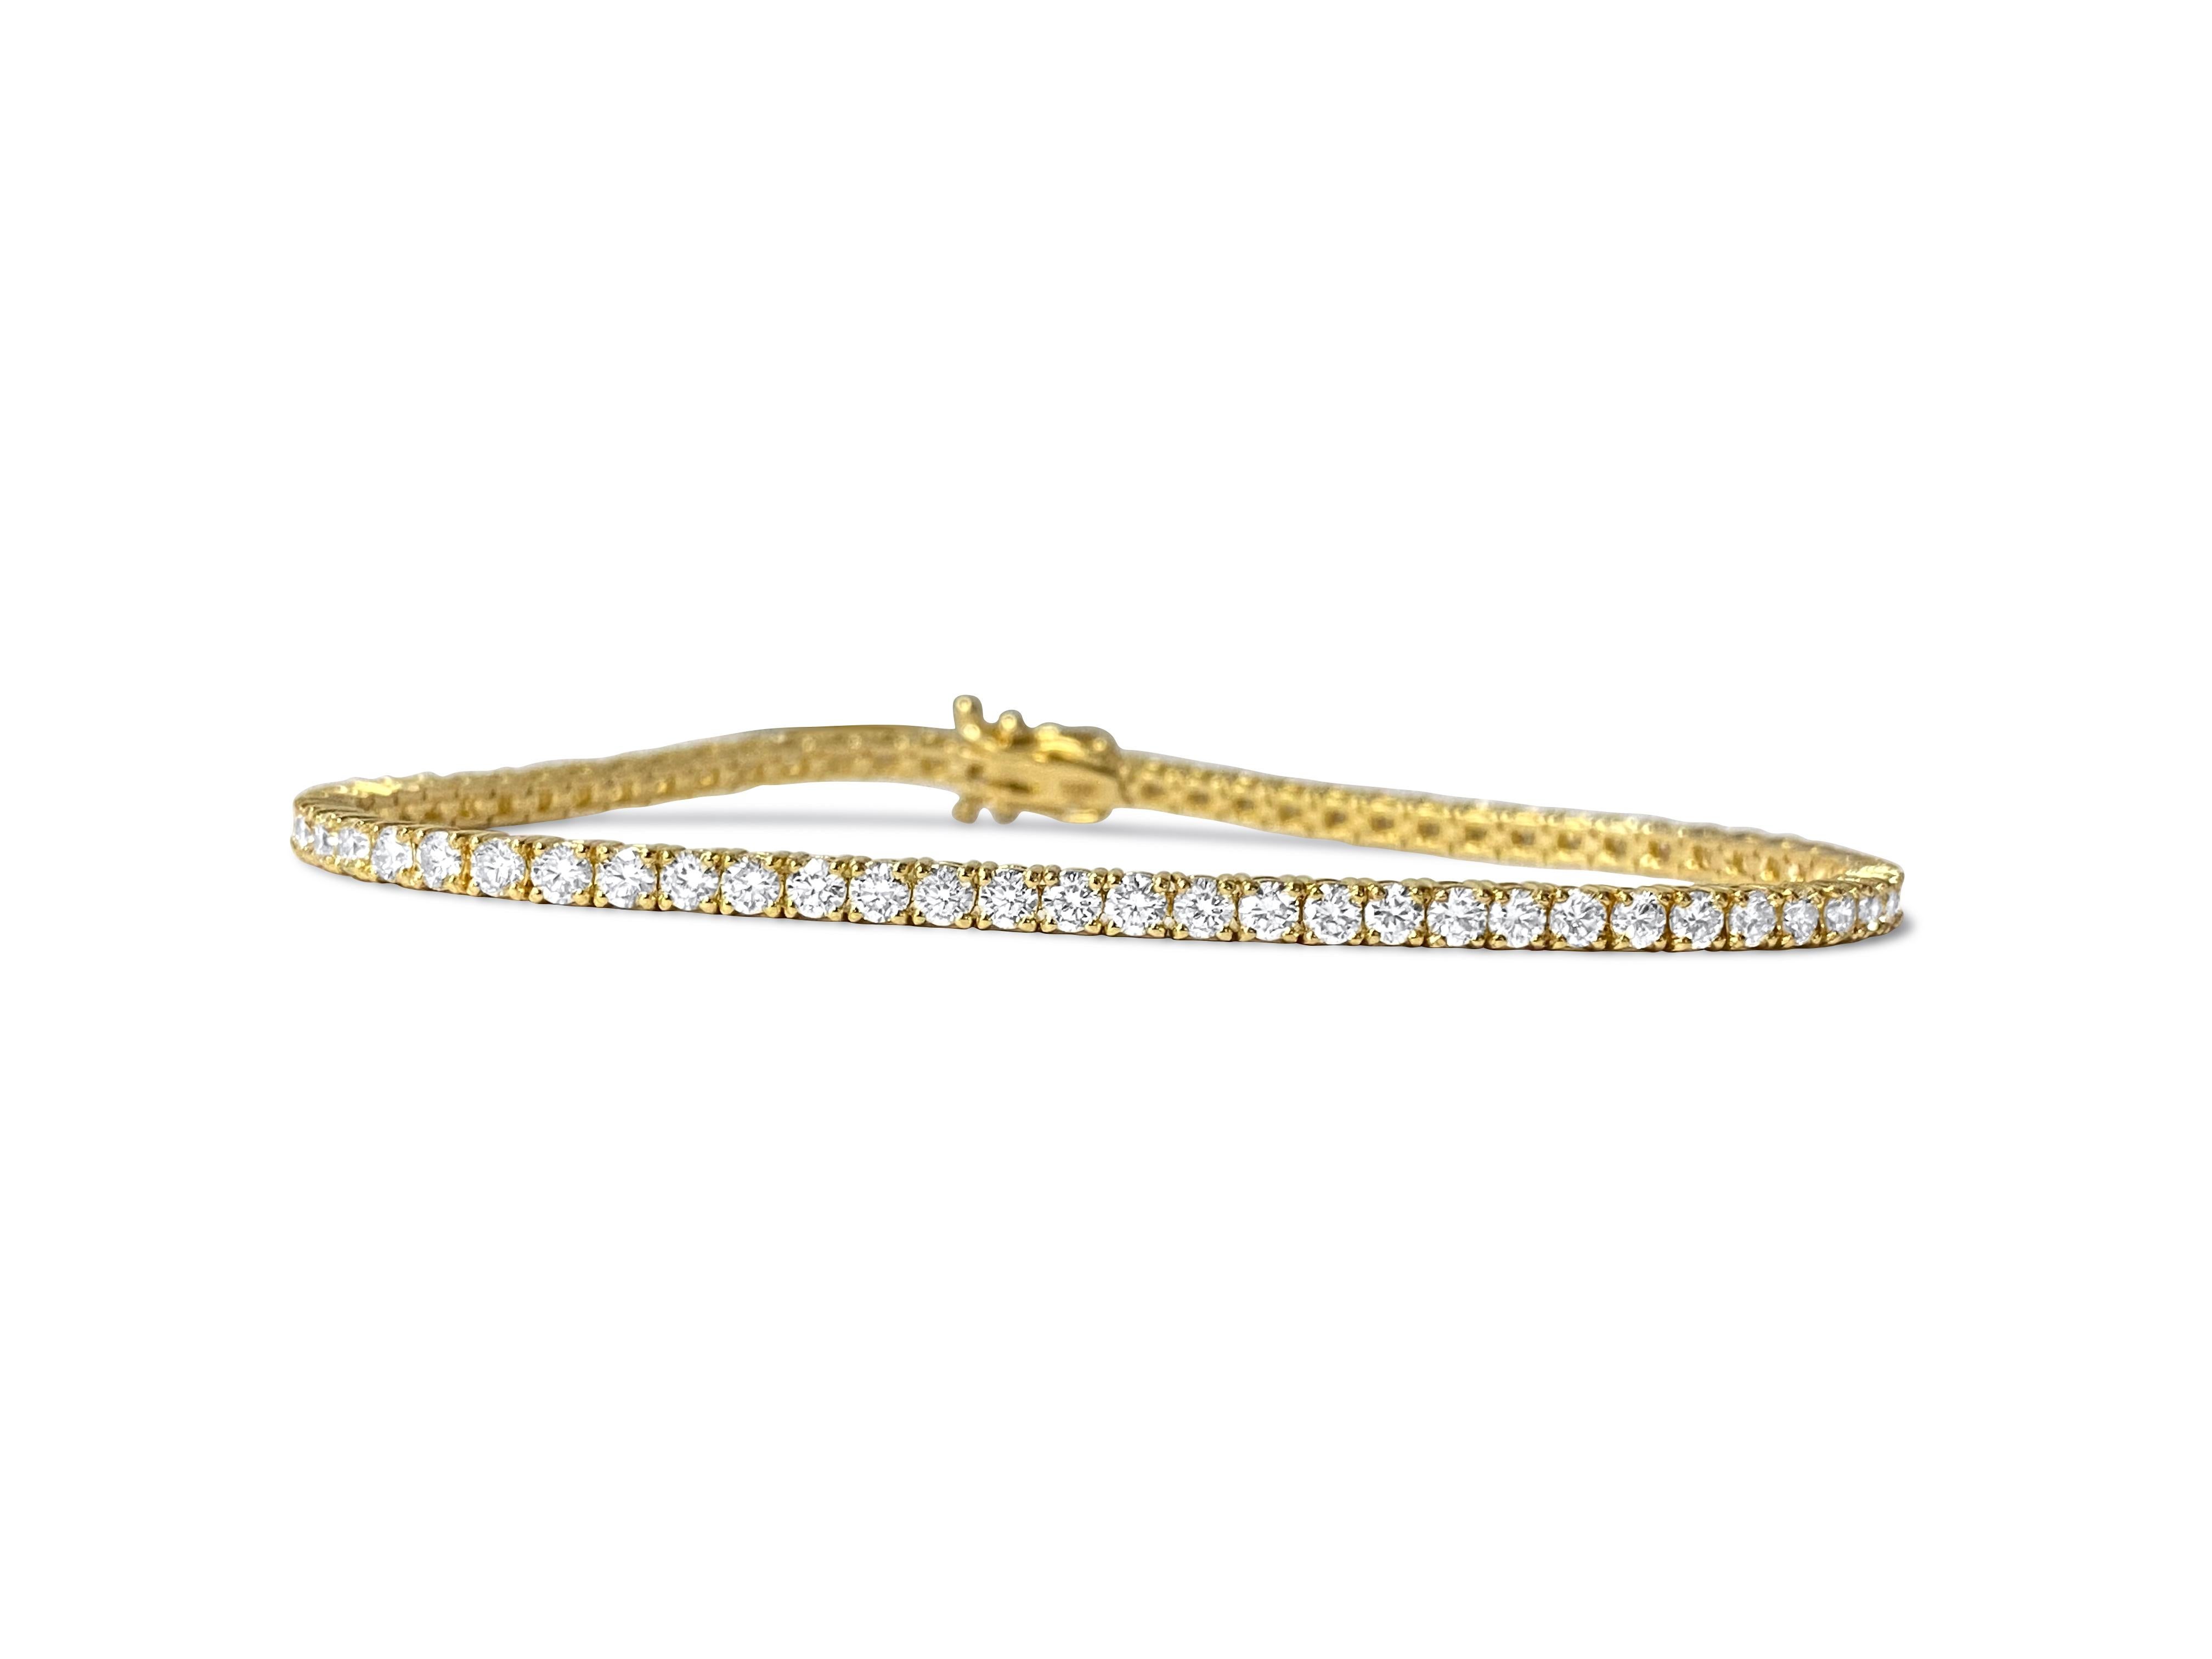 Fabriqué en luxueux or jaune 14k, ce bracelet de tennis unisexe en diamant exquis affiche un poids total de 5,00 carats, avec des diamants de pureté VVS-VS et de couleur H. Serti sur des griffes, chaque diamant rond de taille brillant brille d'un